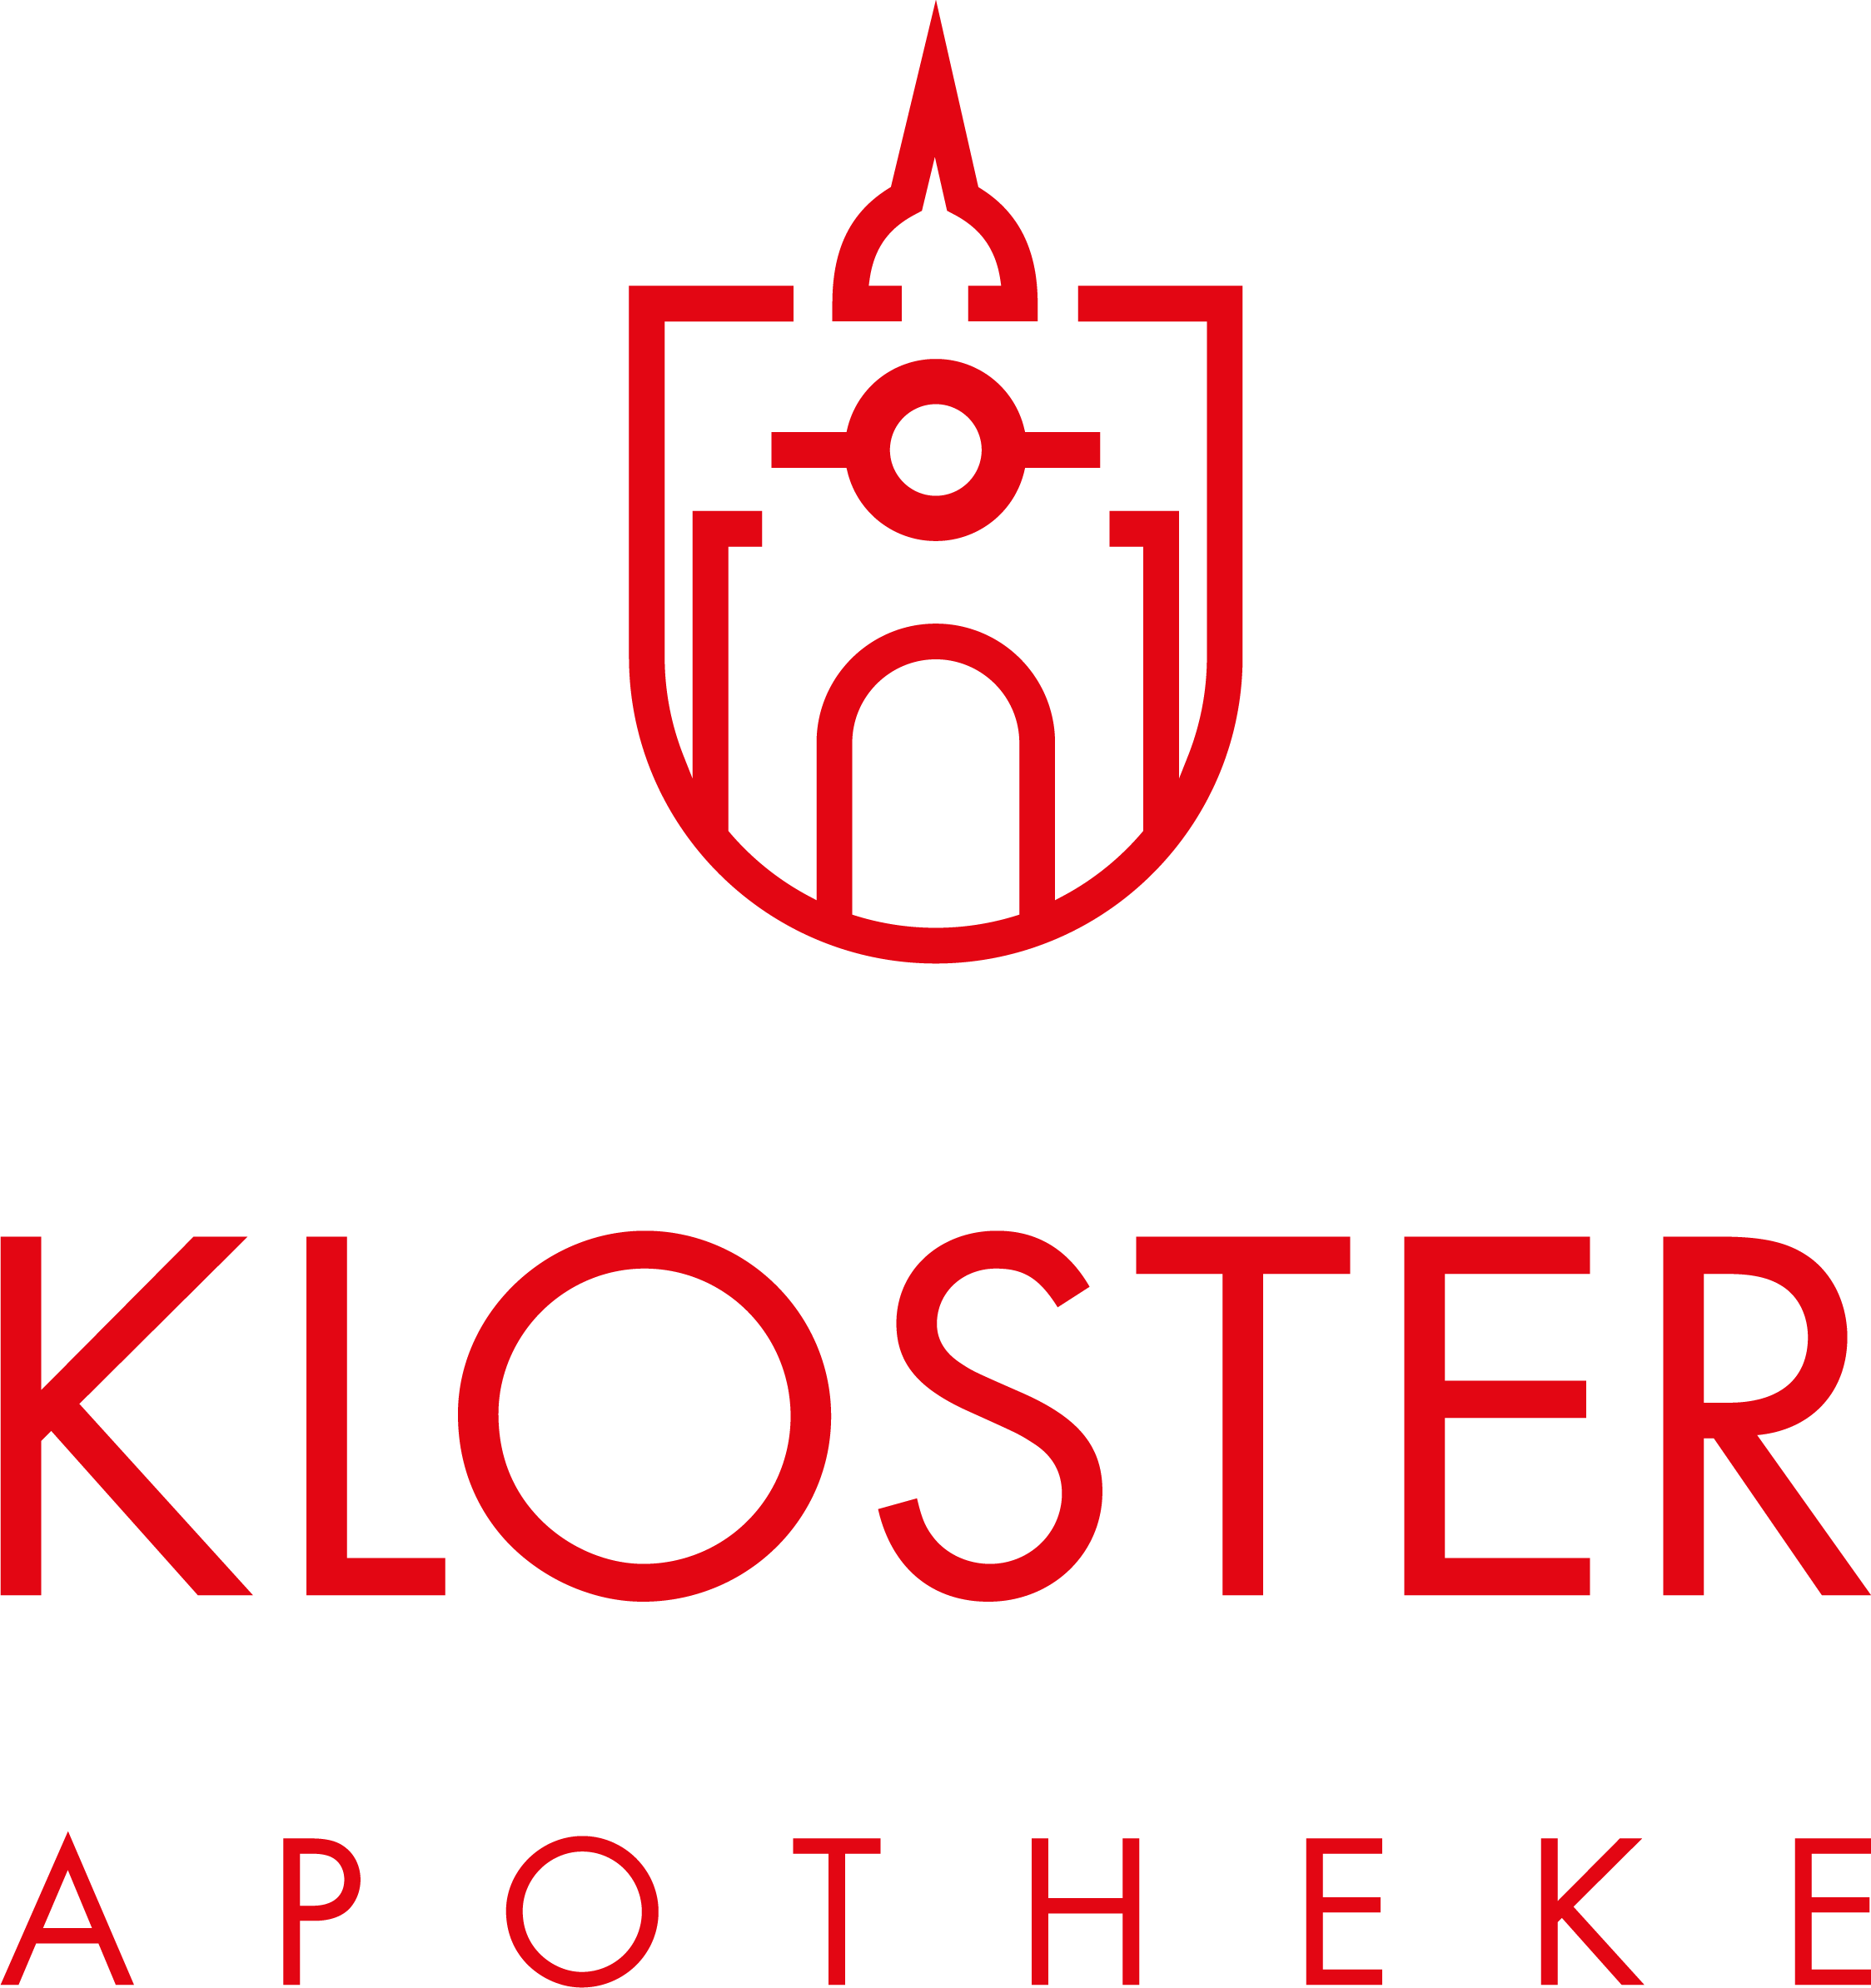 Kloster-Apotheke